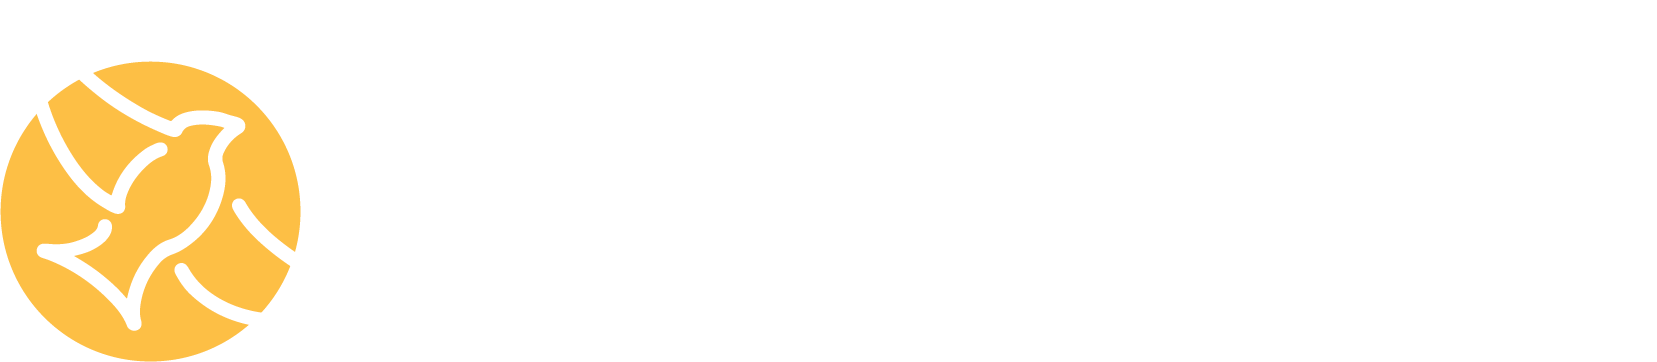 Meadowlark Strategies